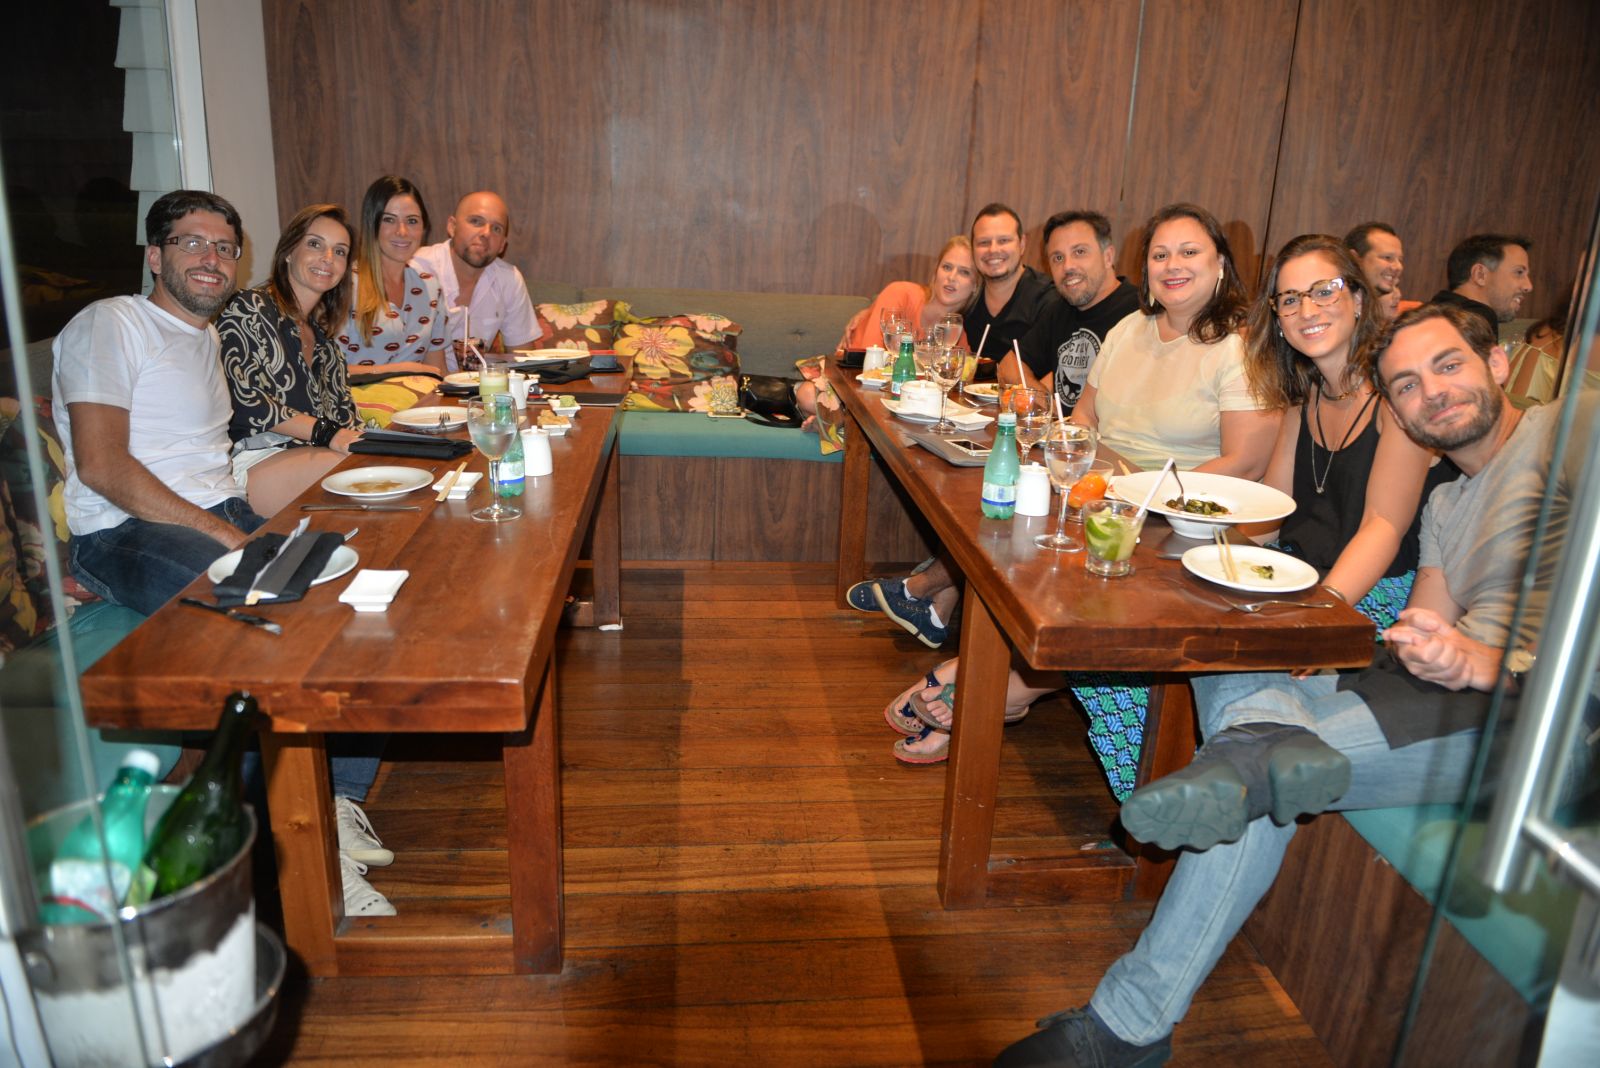 Paulistas jantando no restaurante de Salvador neste sábado.